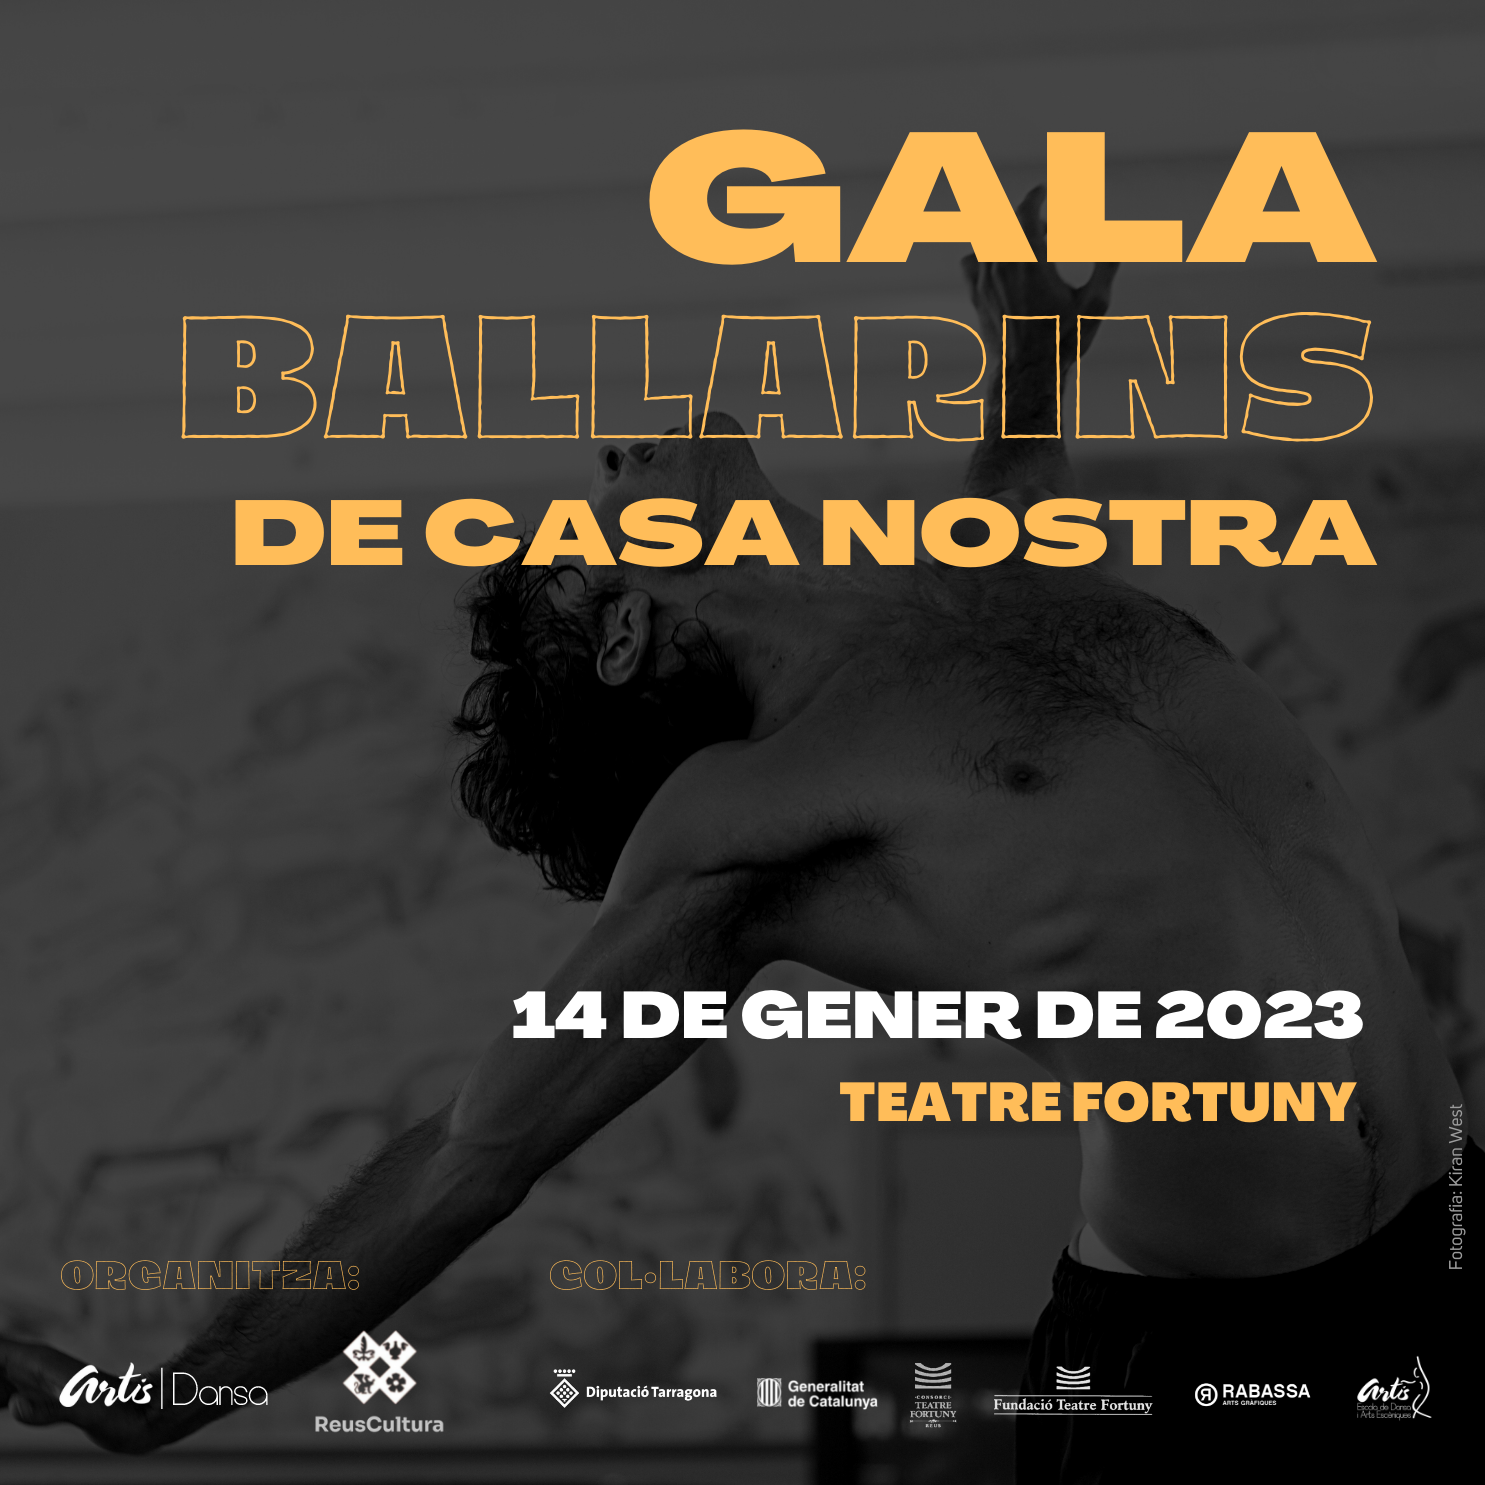 GALA BALLARINS DE CASA NOSTRA